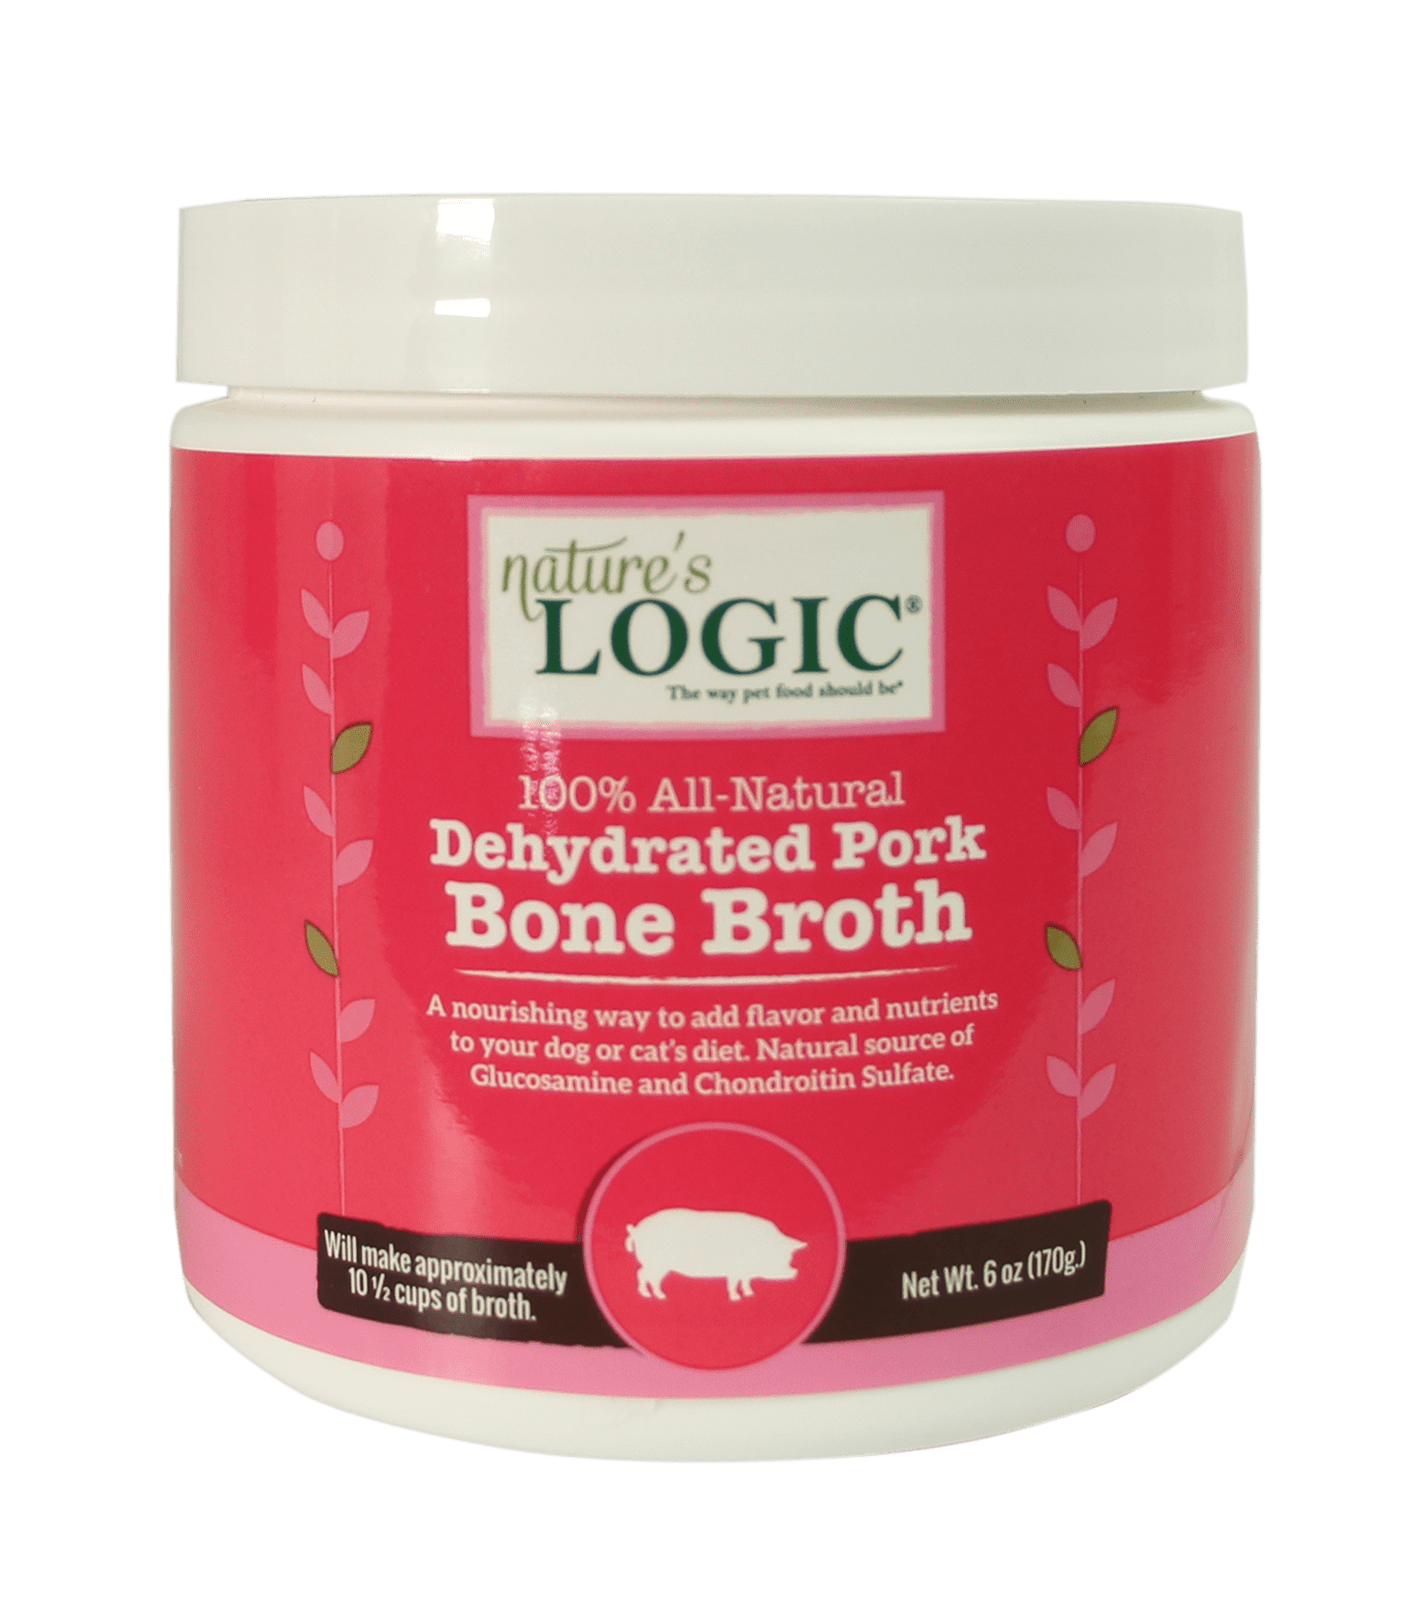 Dehydrated Pork Bone Broth